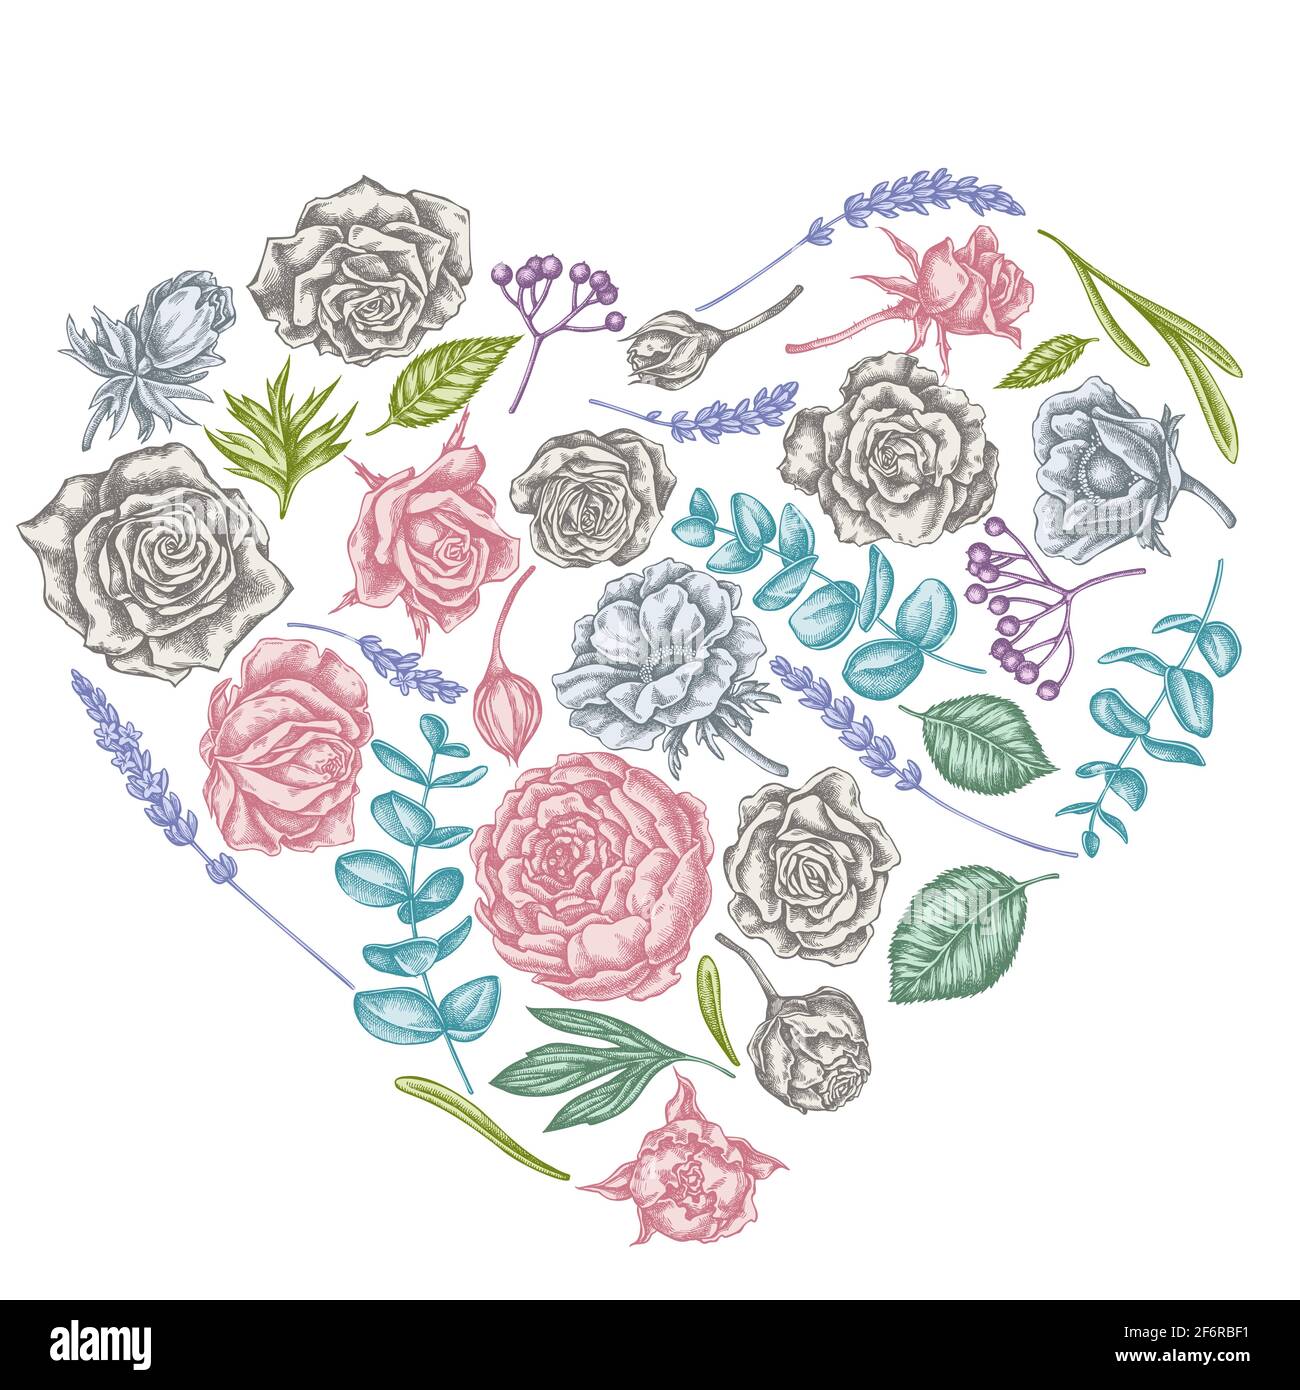 Motif coeur fleuri avec roses pastel, anémone, eucalyptus, lavande, pivoine, viburnum Illustration de Vecteur